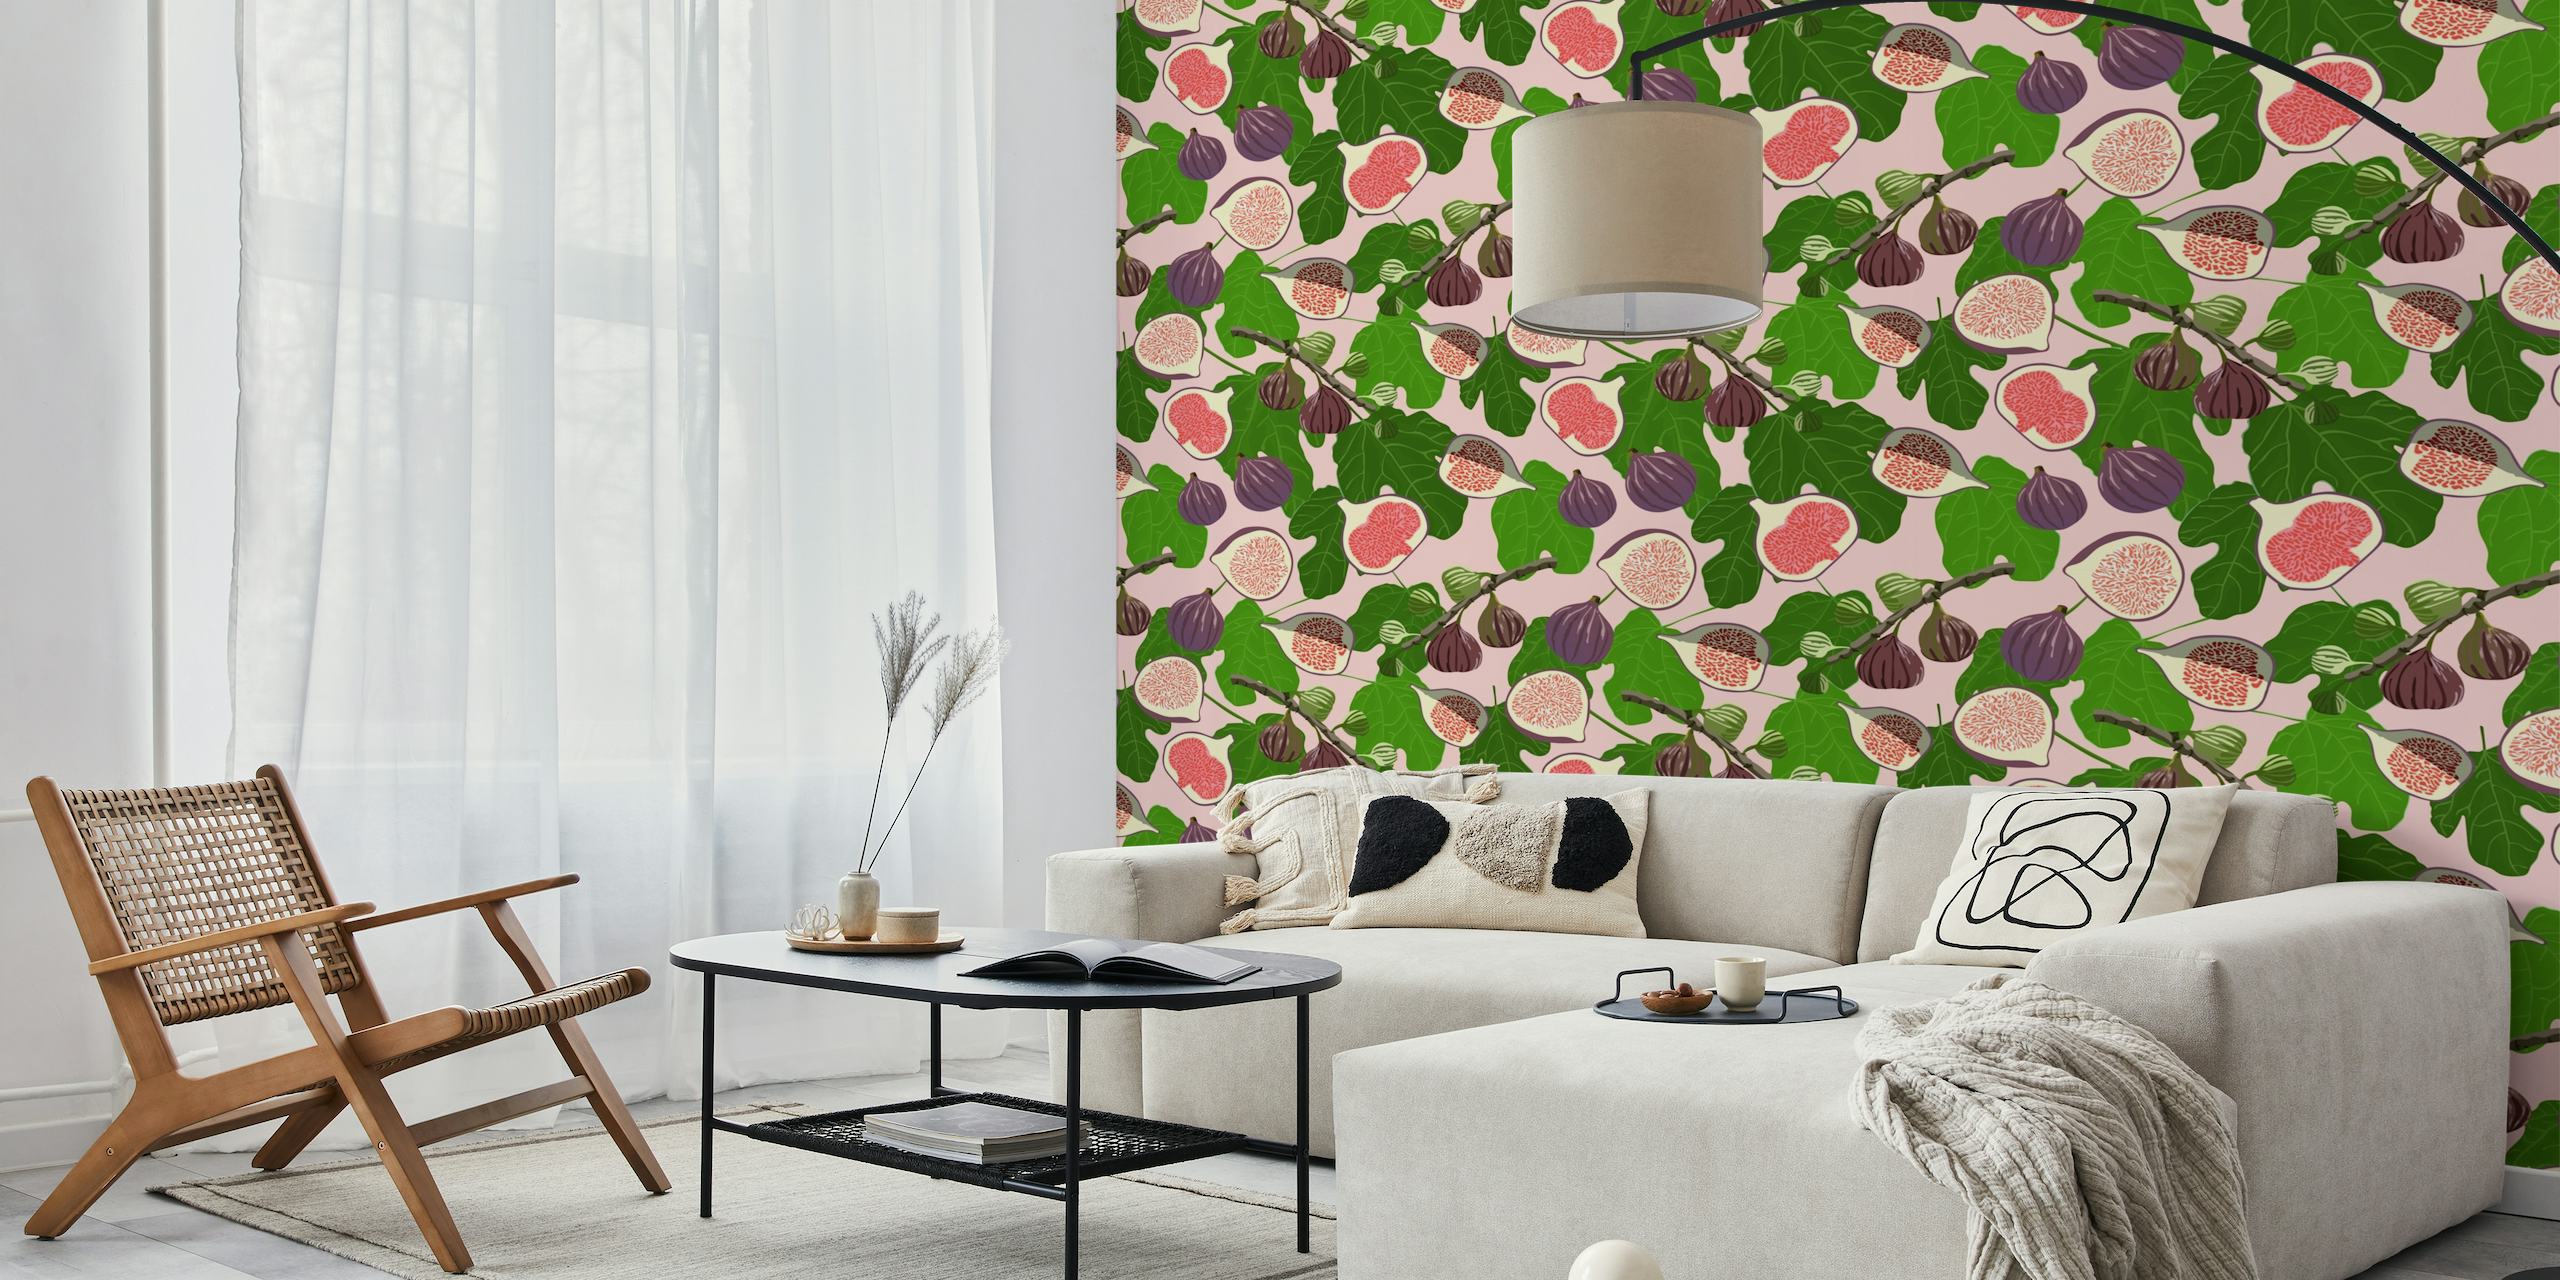 Jasna i zachęcająca fototapeta „Figi i liście” z różowymi i fioletowymi figami pośród zielonych liści